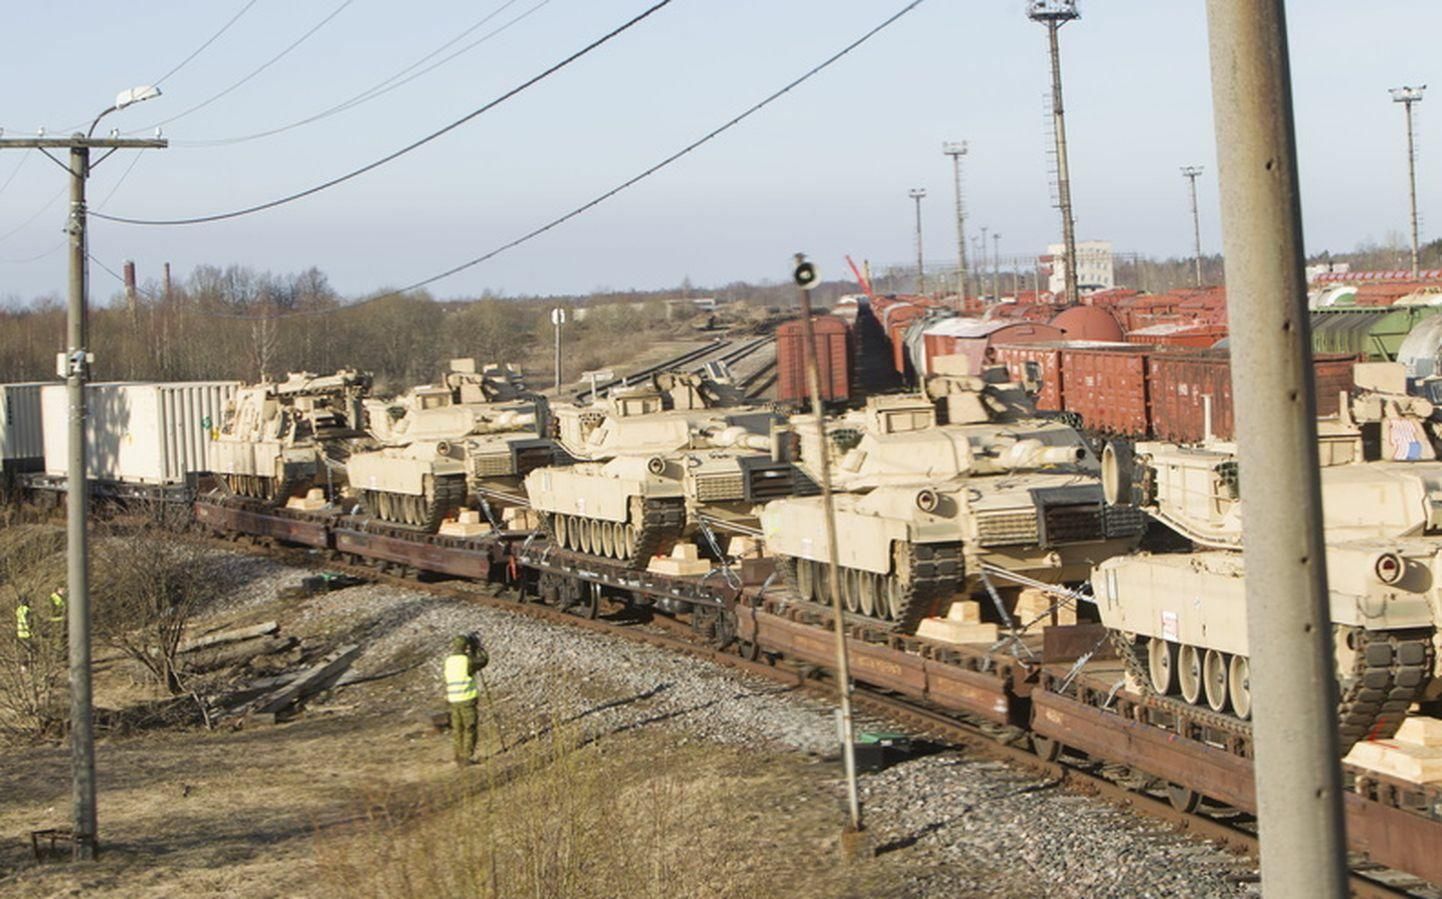 Ameerika Ühendriikide tankirühma Abrams tankid saabusid 2015. aastal Eestisse suurõppusele Siil mööda praegust raudteed.